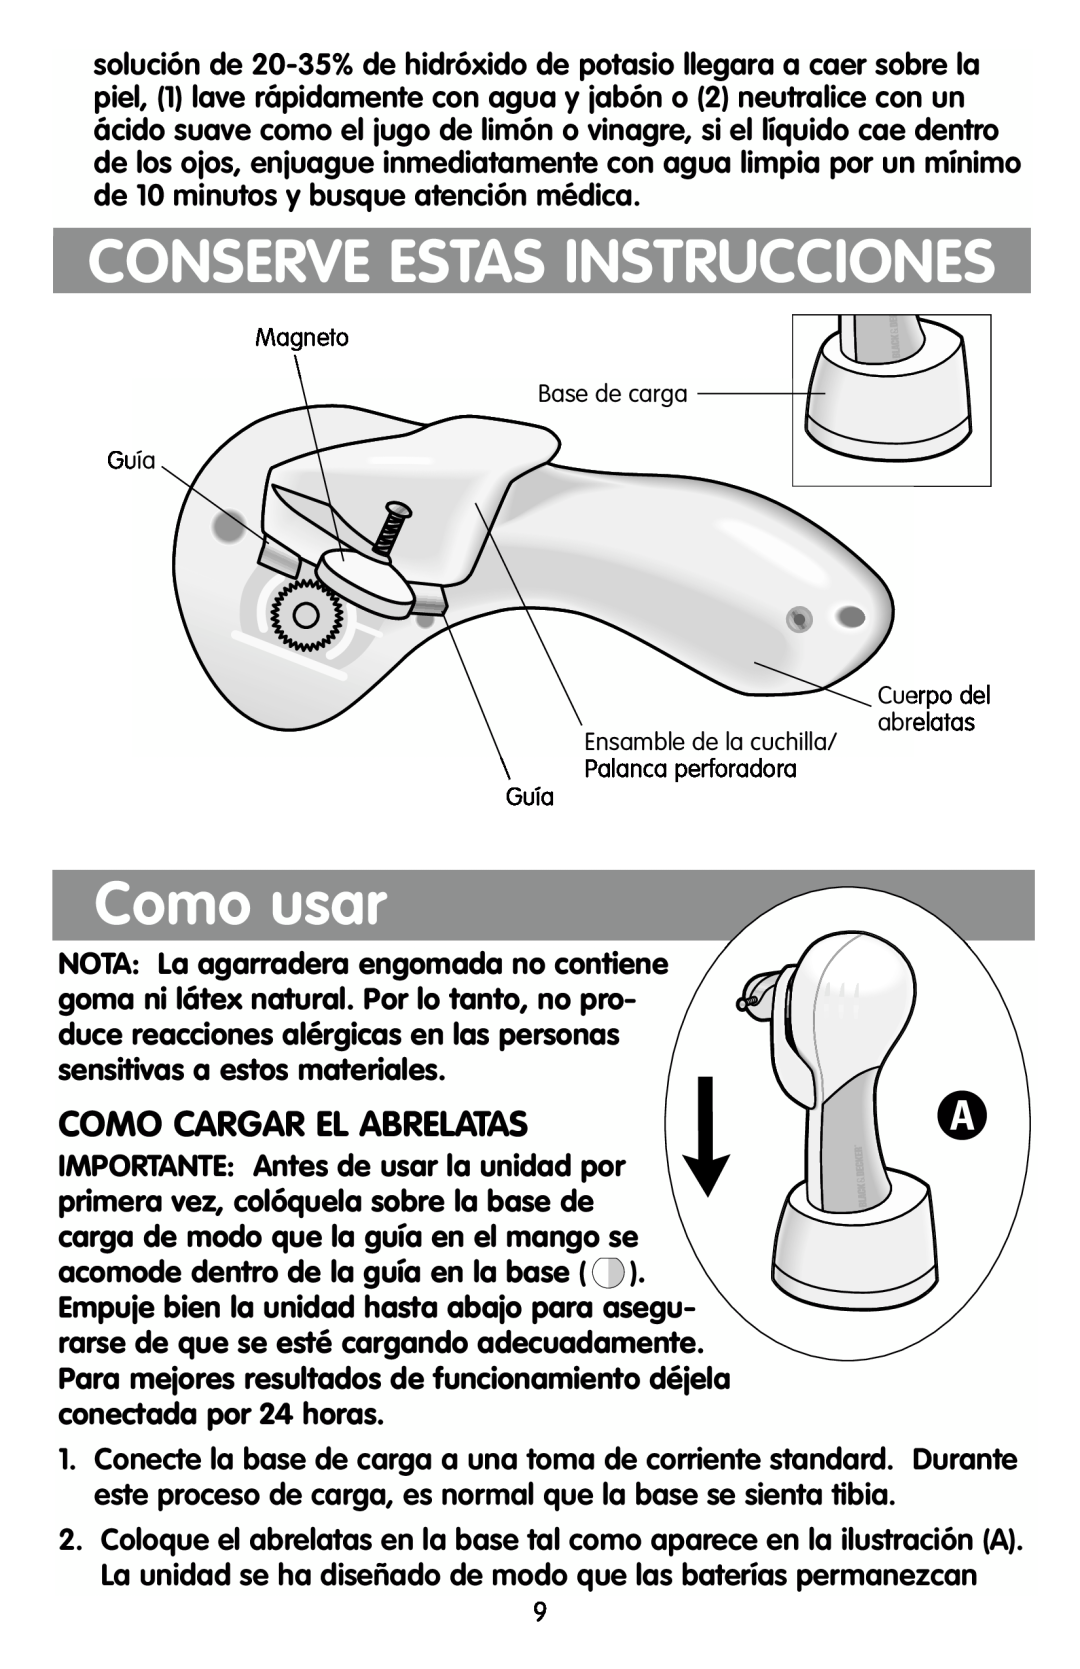 Black & Decker KEC500 manual Como usar, Como Cargar El Abrelatas, Conserve Estas Instrucciones 